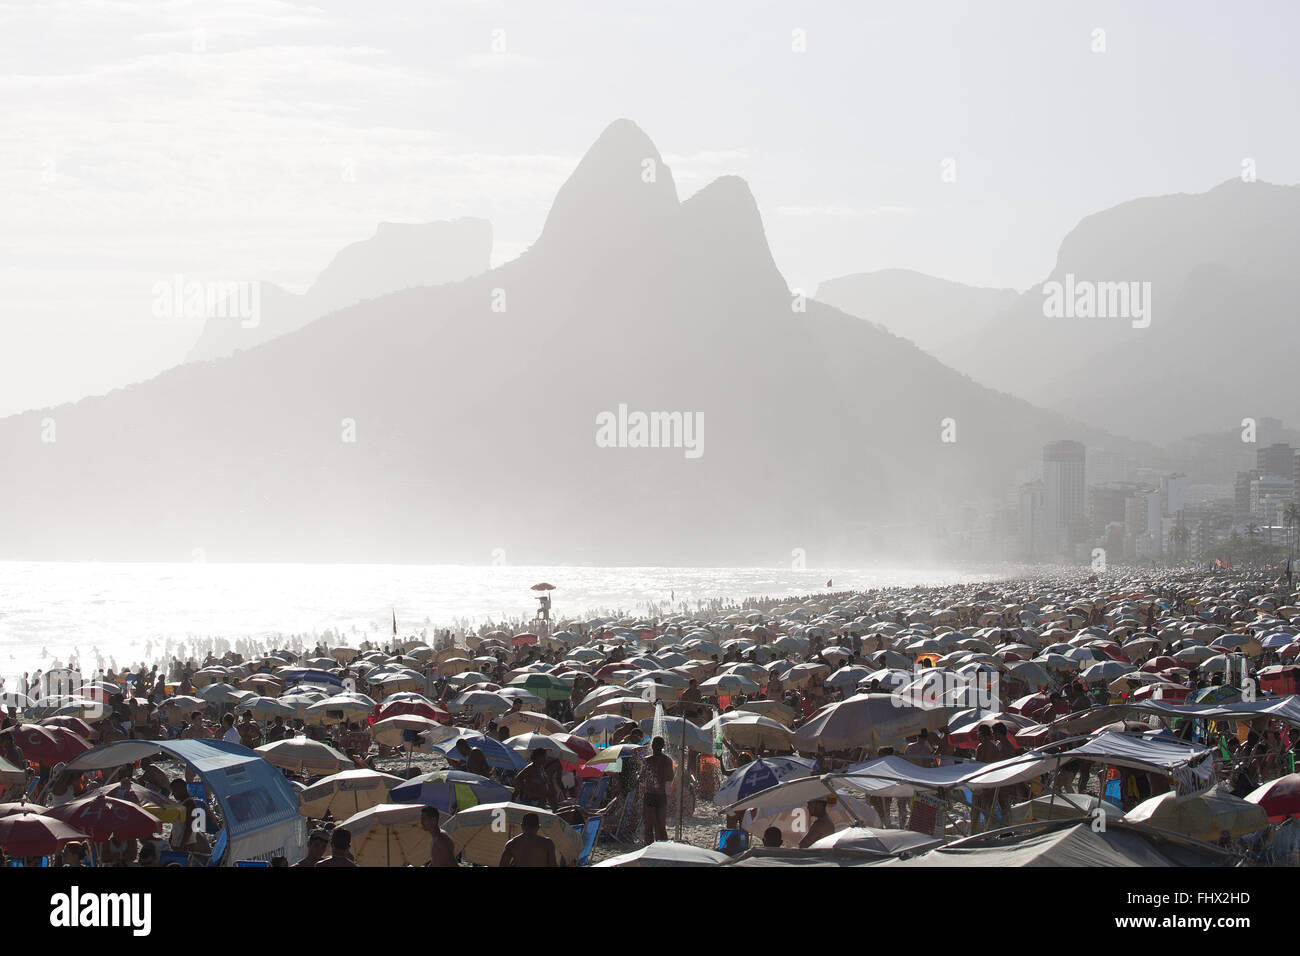 Badegäste am Strand von Ipanema - Hintergrund Gebrüder Hill Stockfoto